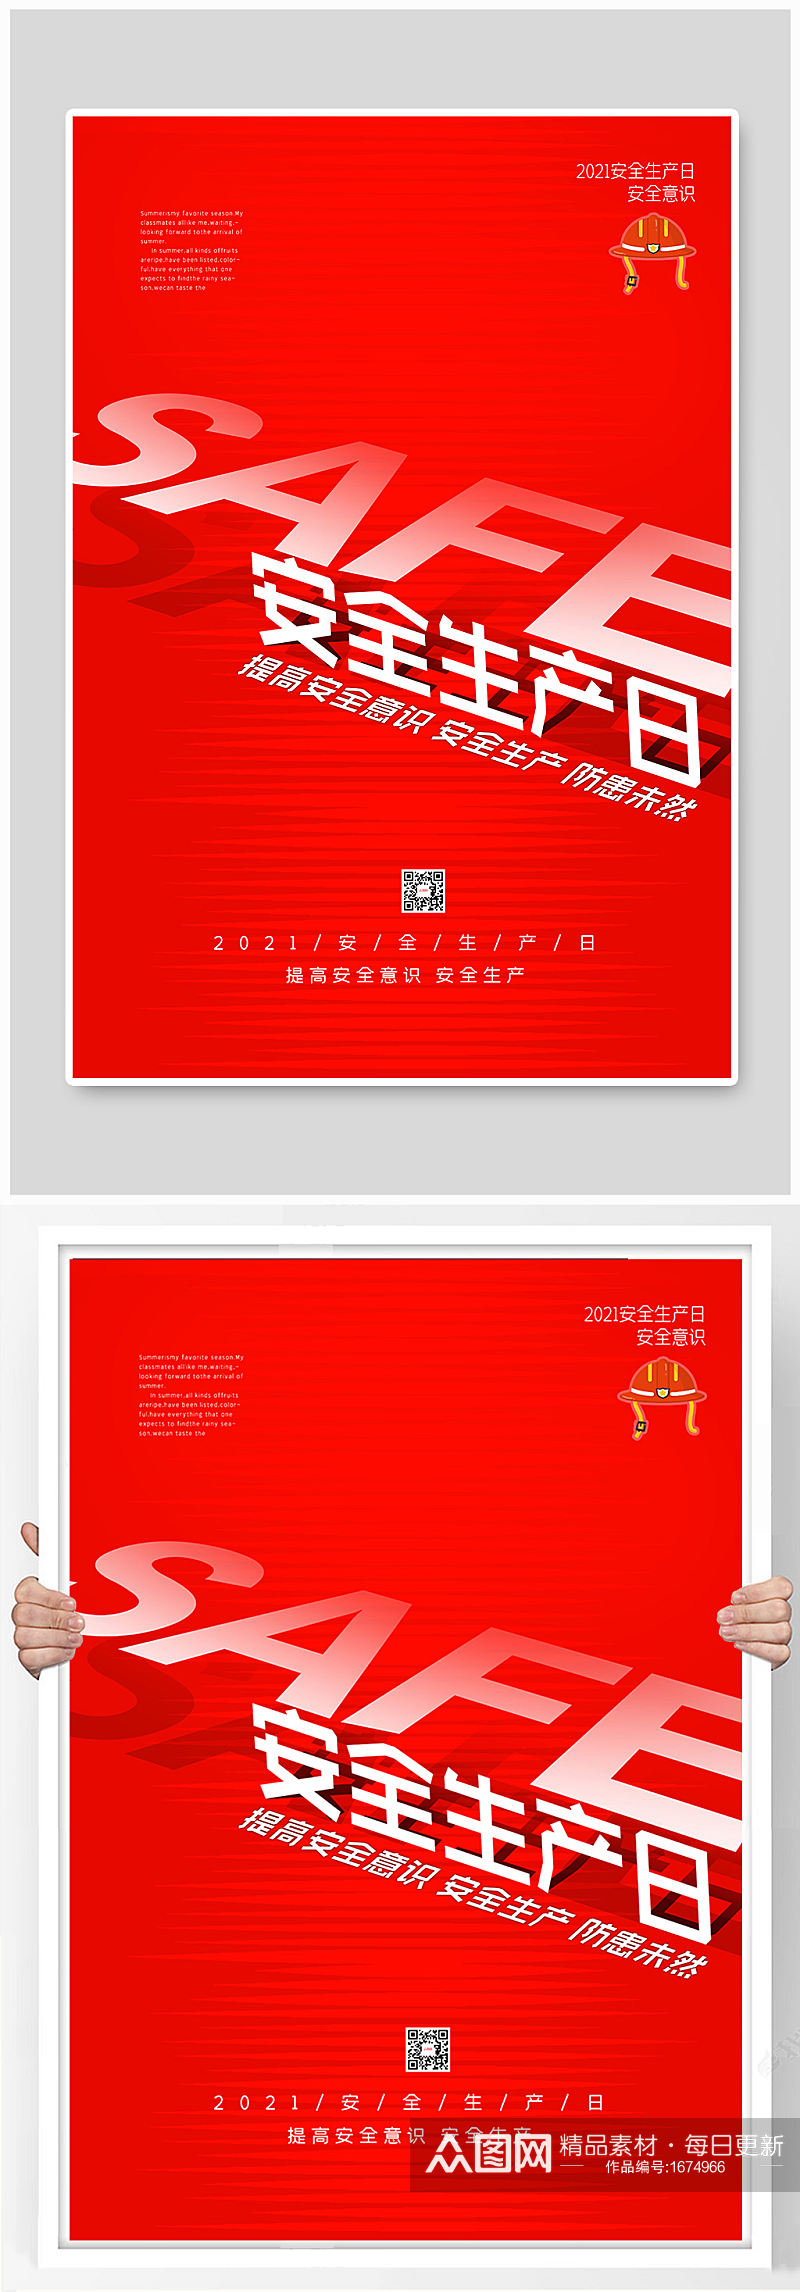 红色大气安全生产日宣传海报素材